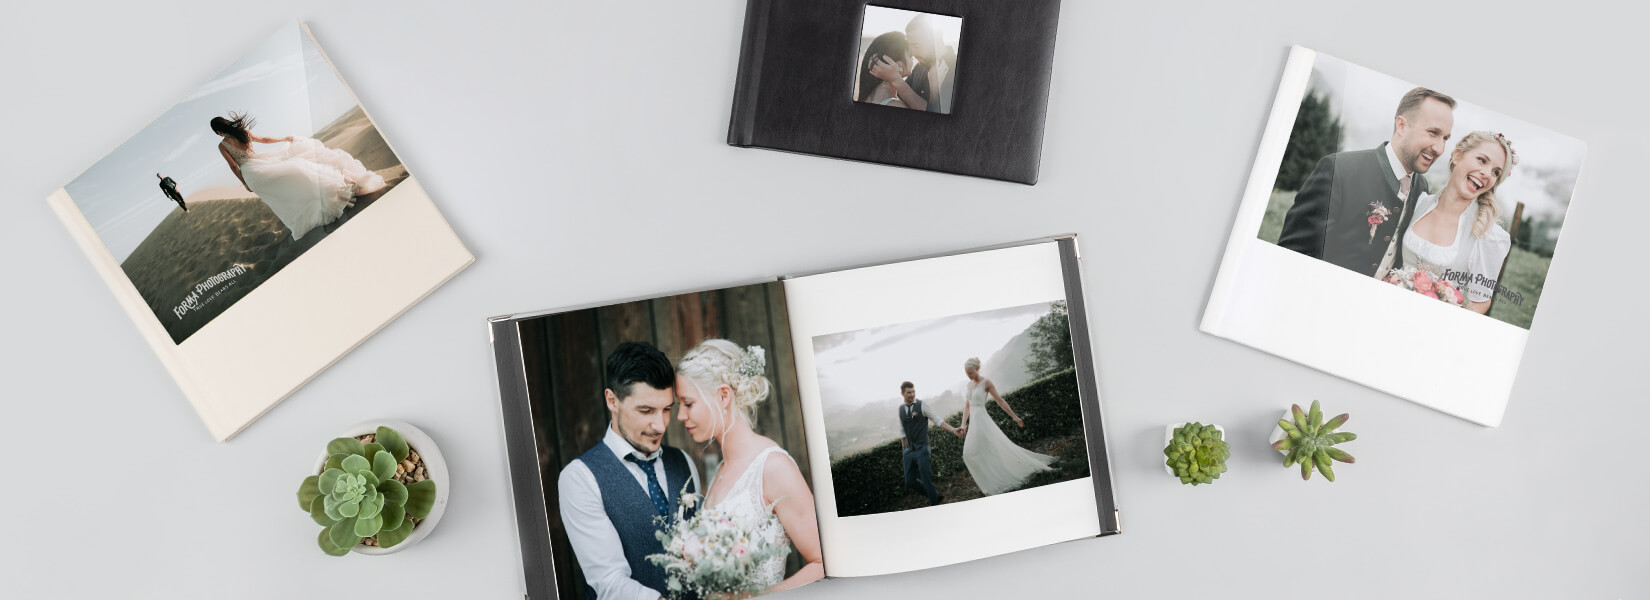 Profesjonalne fotoksiążki dla fotografii ślubnej